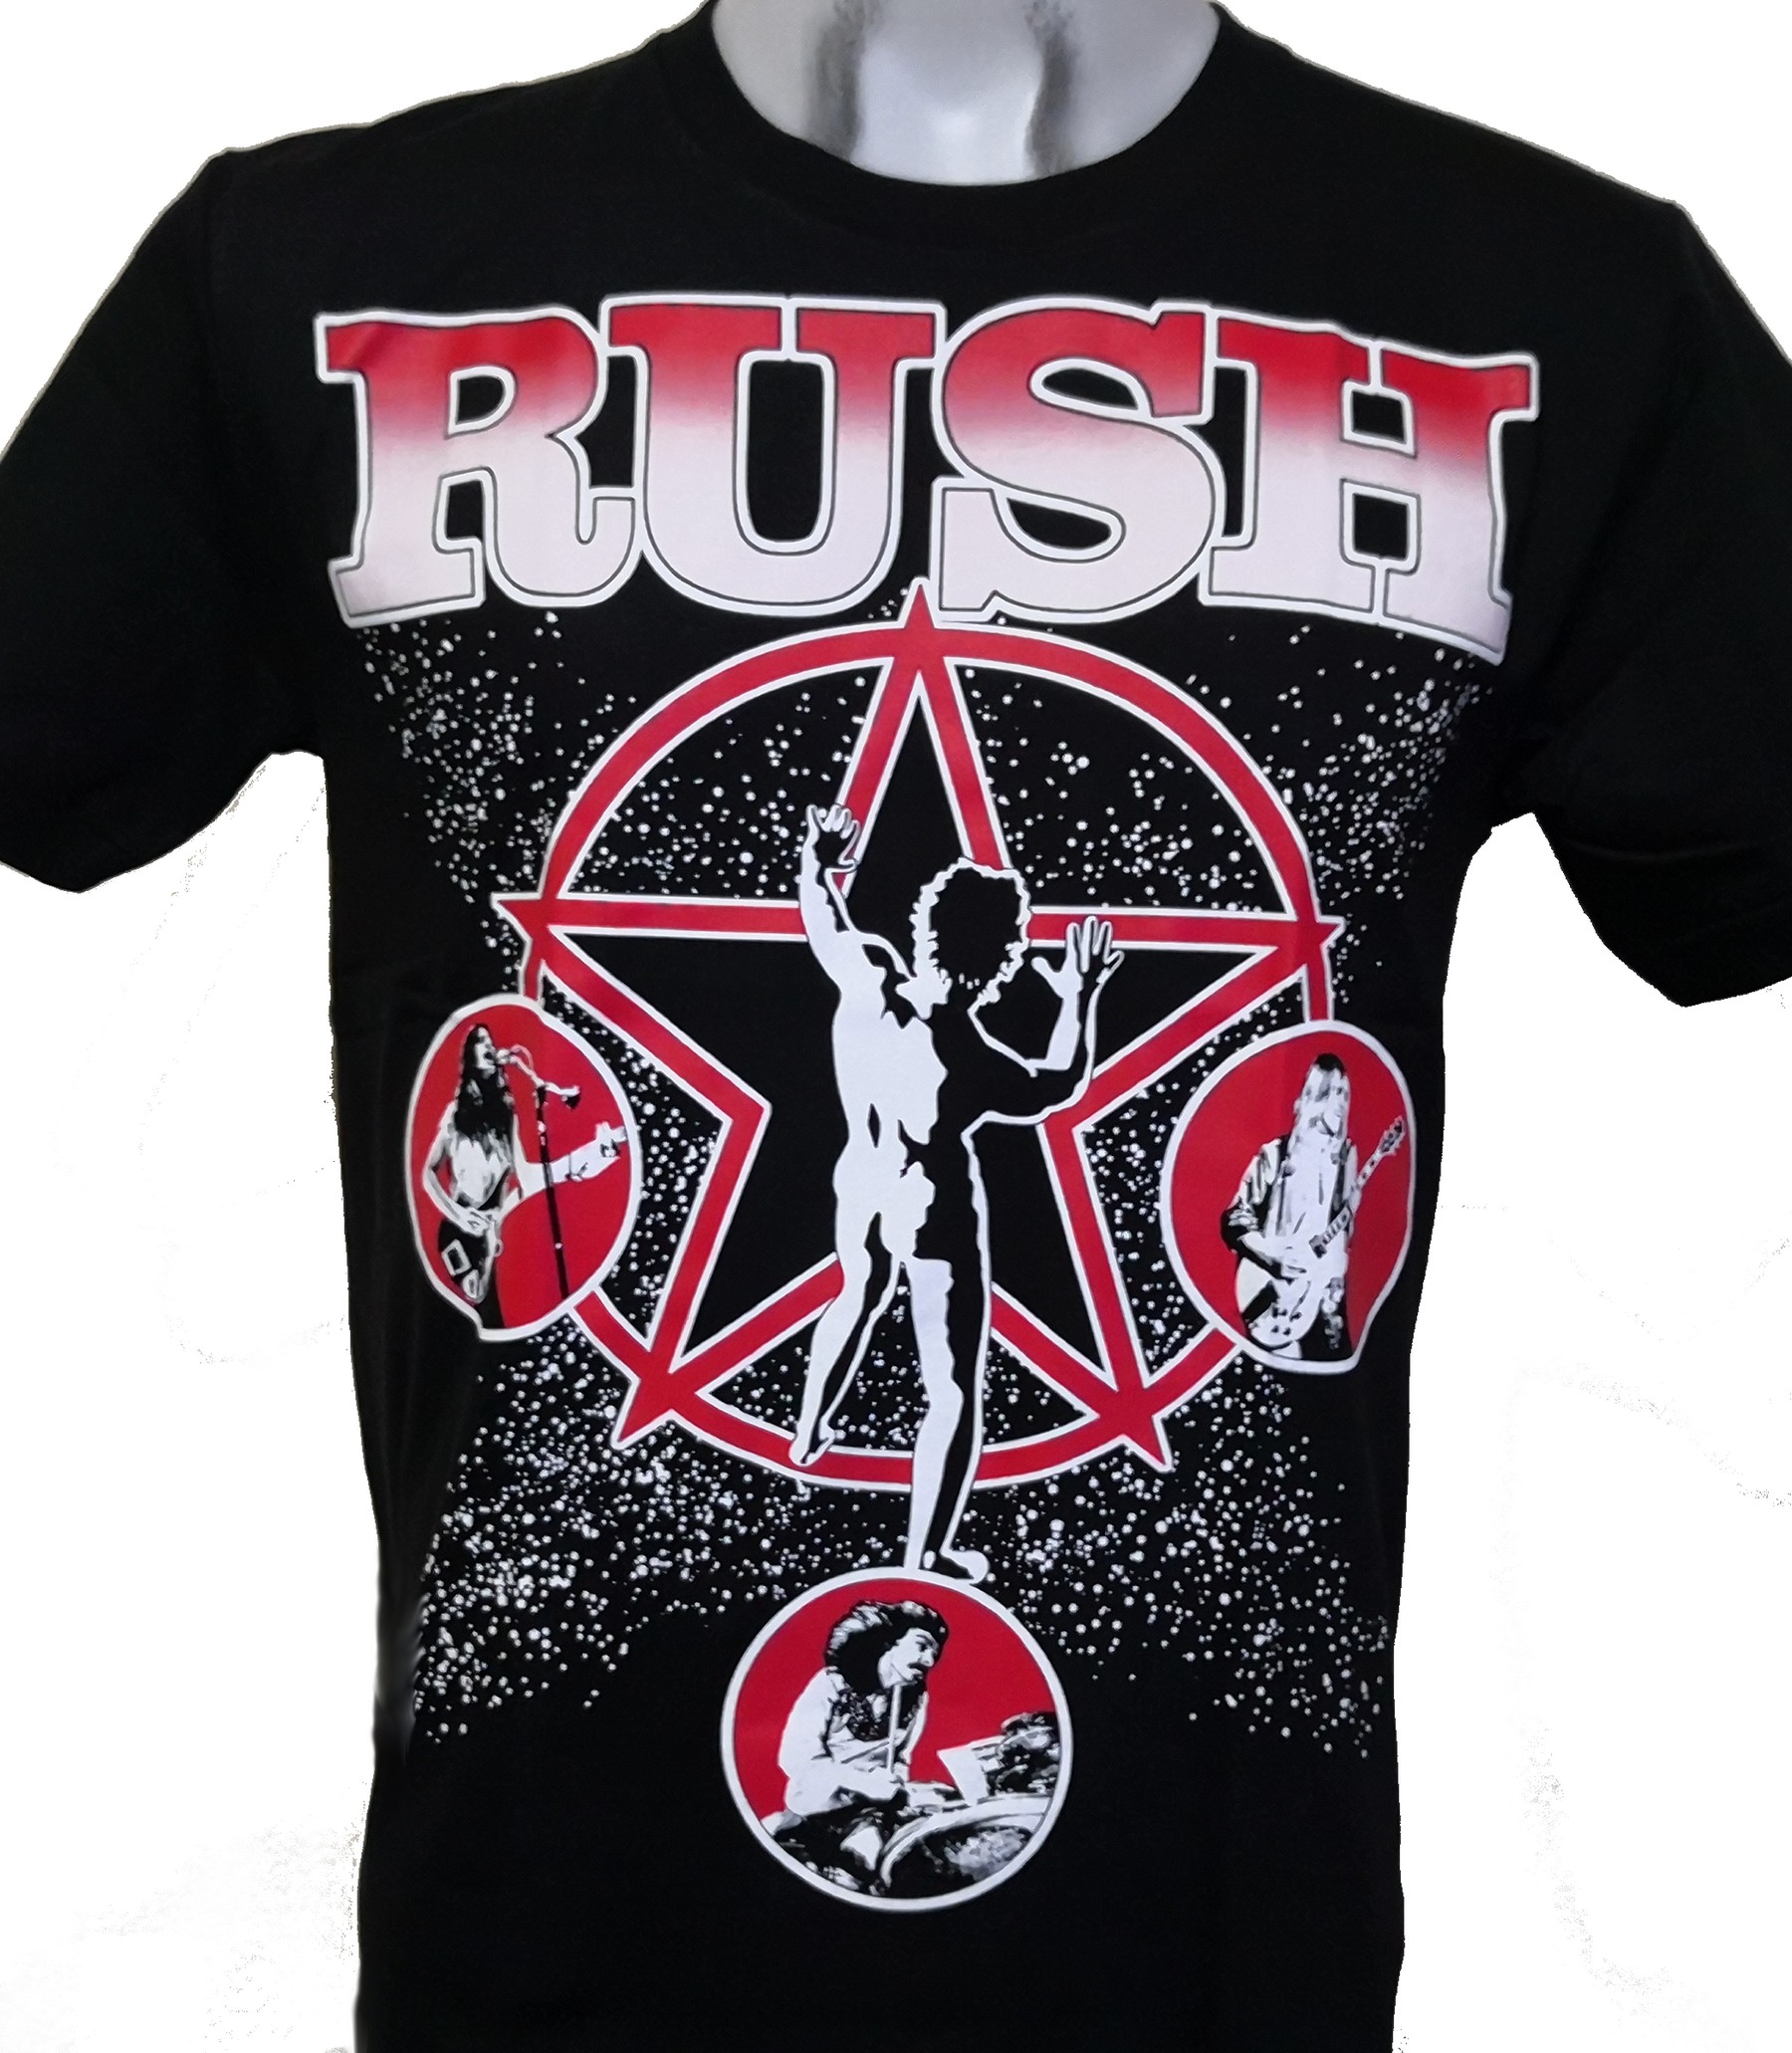 Rush t-shirt size S